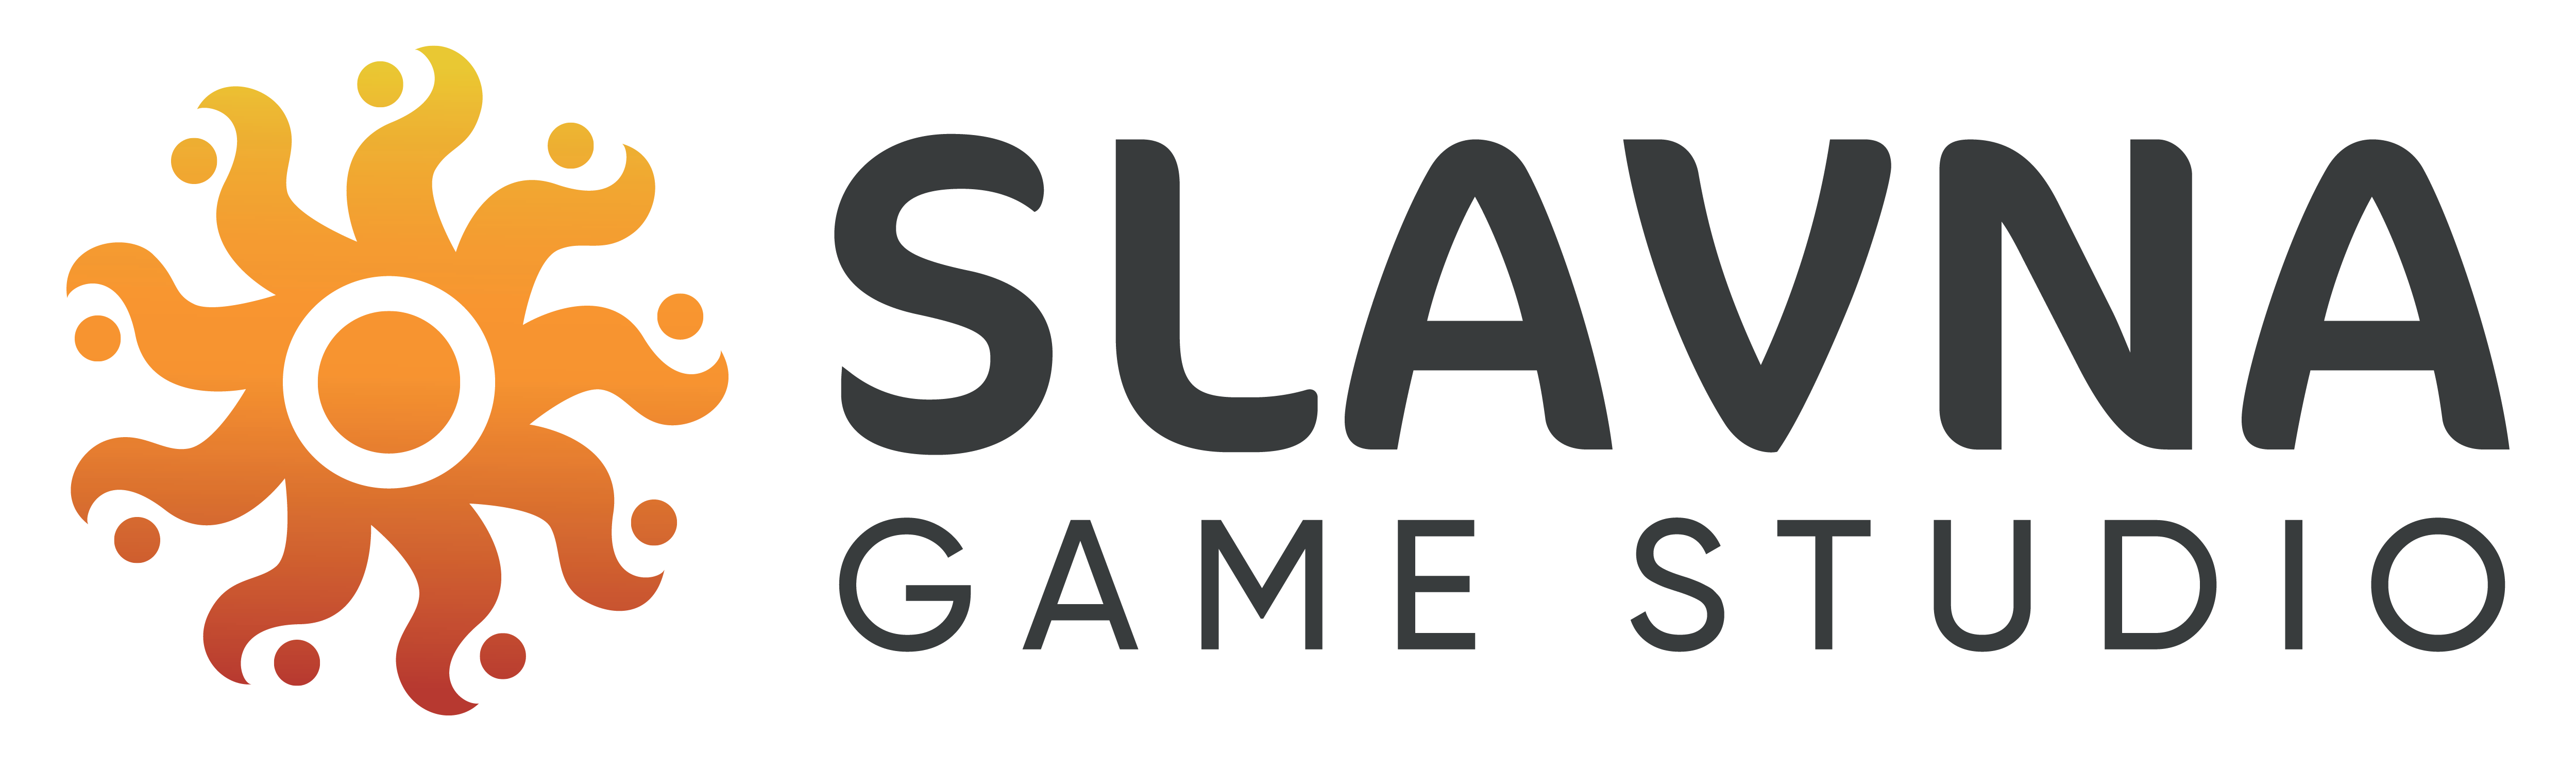 Slavna Game Studio Logo